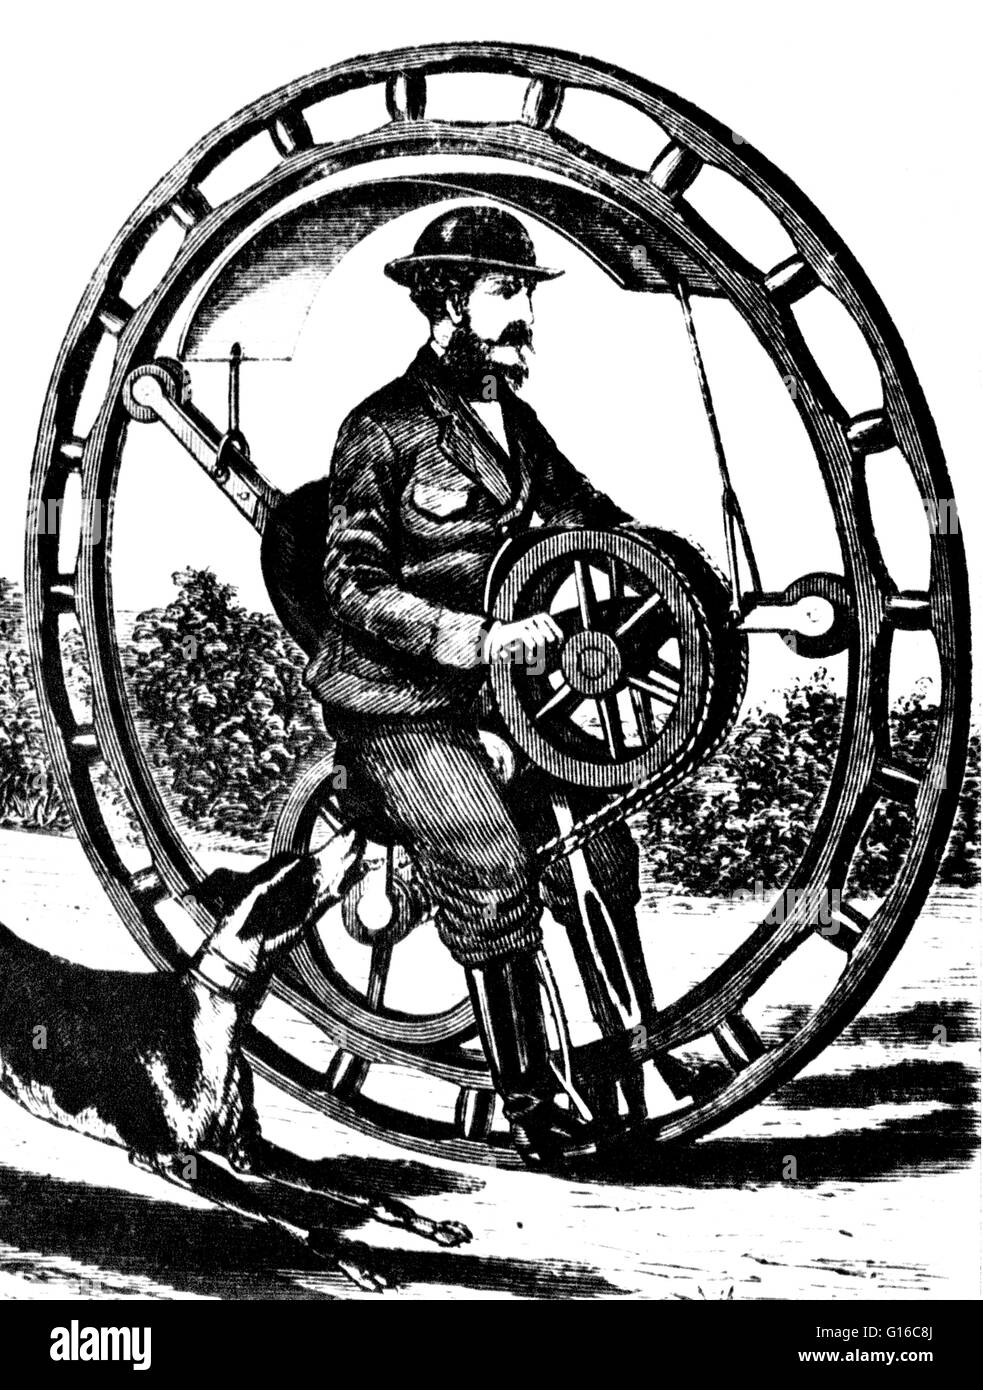 Hemming, du monocycle ou battant Yankee vélocipède, était une main powered monowheel breveté en 1869 par Richard C. Hemming. Un monowheel est un véhicule à roues de piste unique semblable à un monocycle, mais au lieu de rester au-dessus de la roue, le conducteur est assis soit wi Banque D'Images